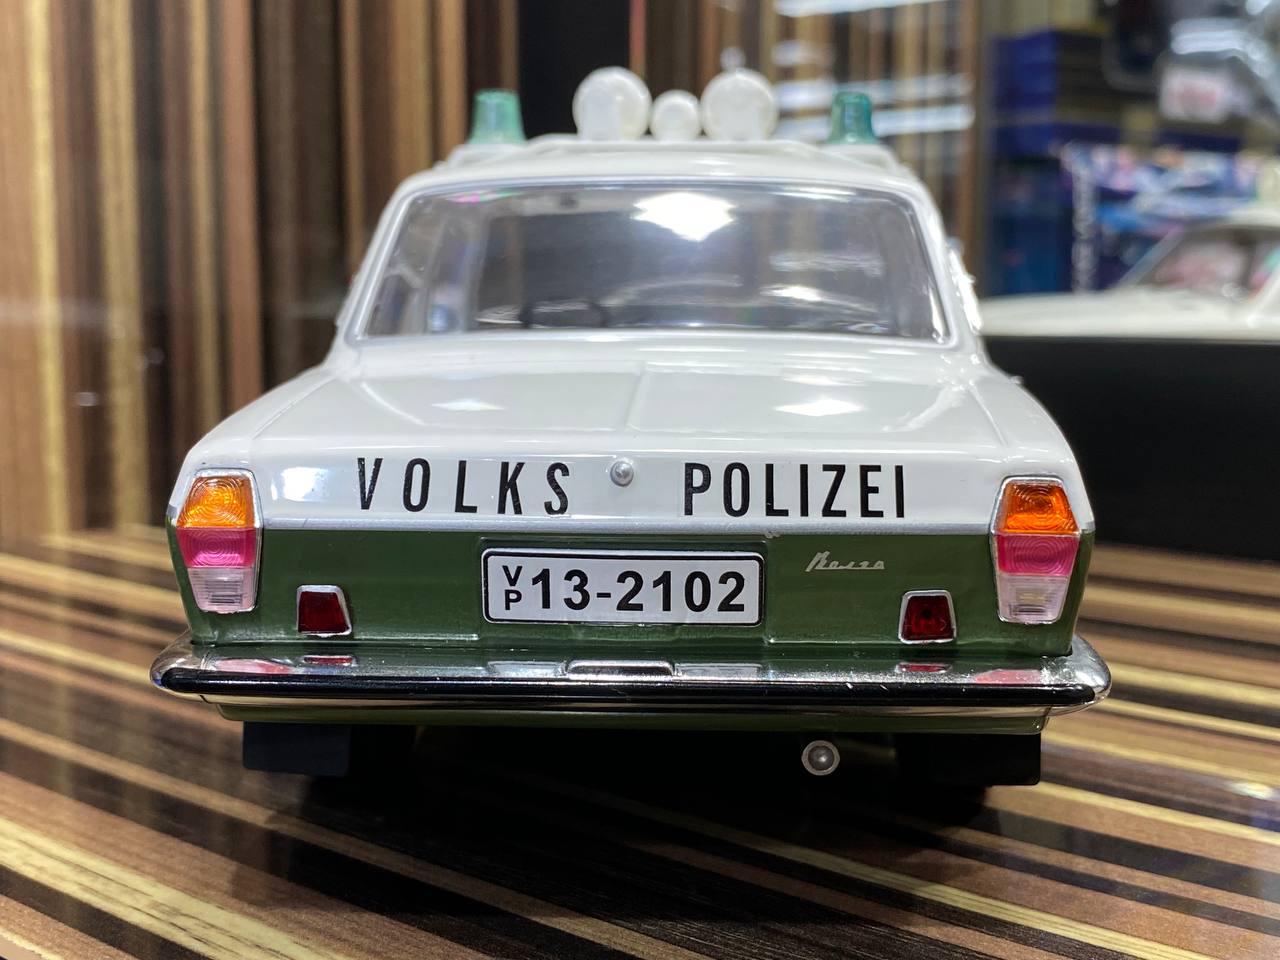 1/18 Resin GAZ-24 Volga Volks-Polizei White and Green by MCG